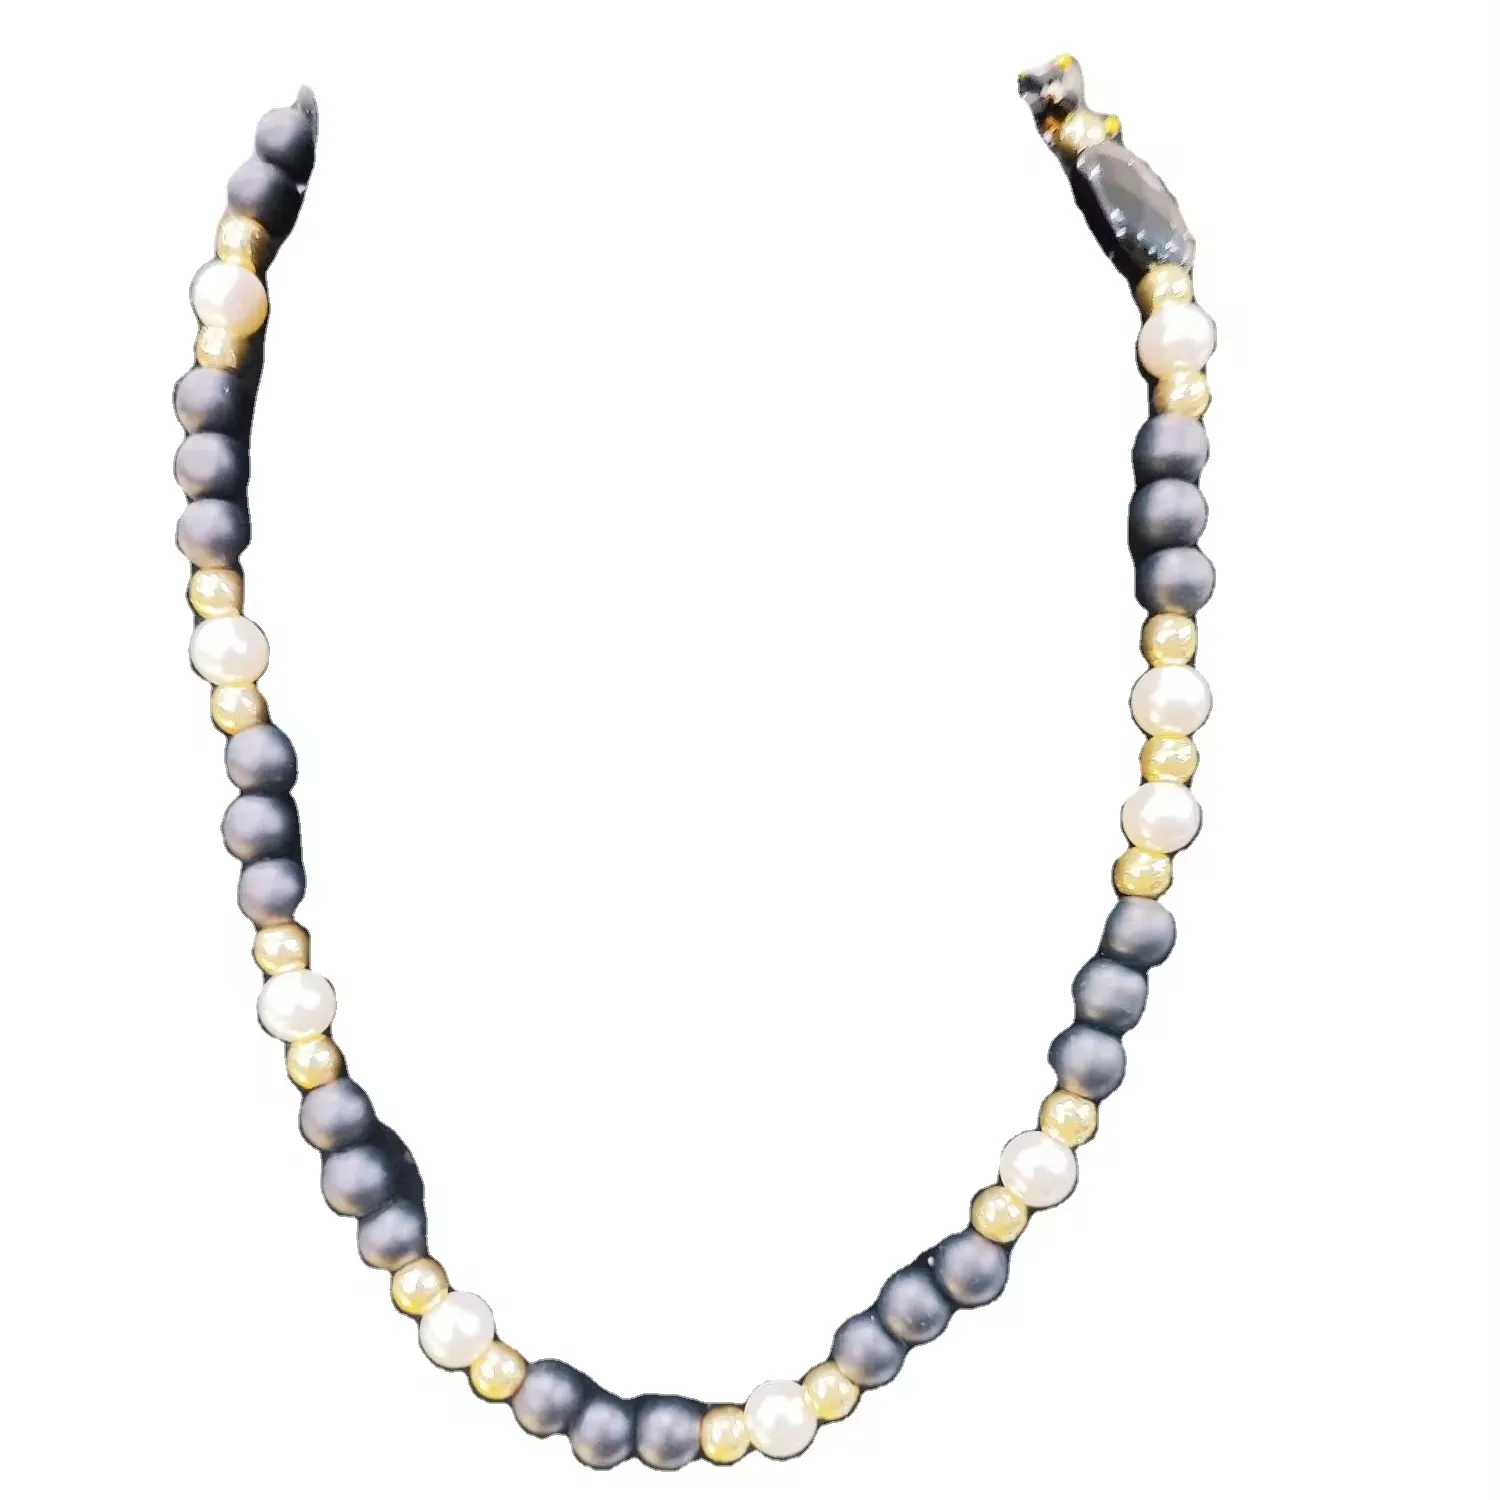 Jugendlicher Trend  buntes mehrschichtiges Perlenkette mit schwarzer Farbe  ideal für junge Modenliebhaber